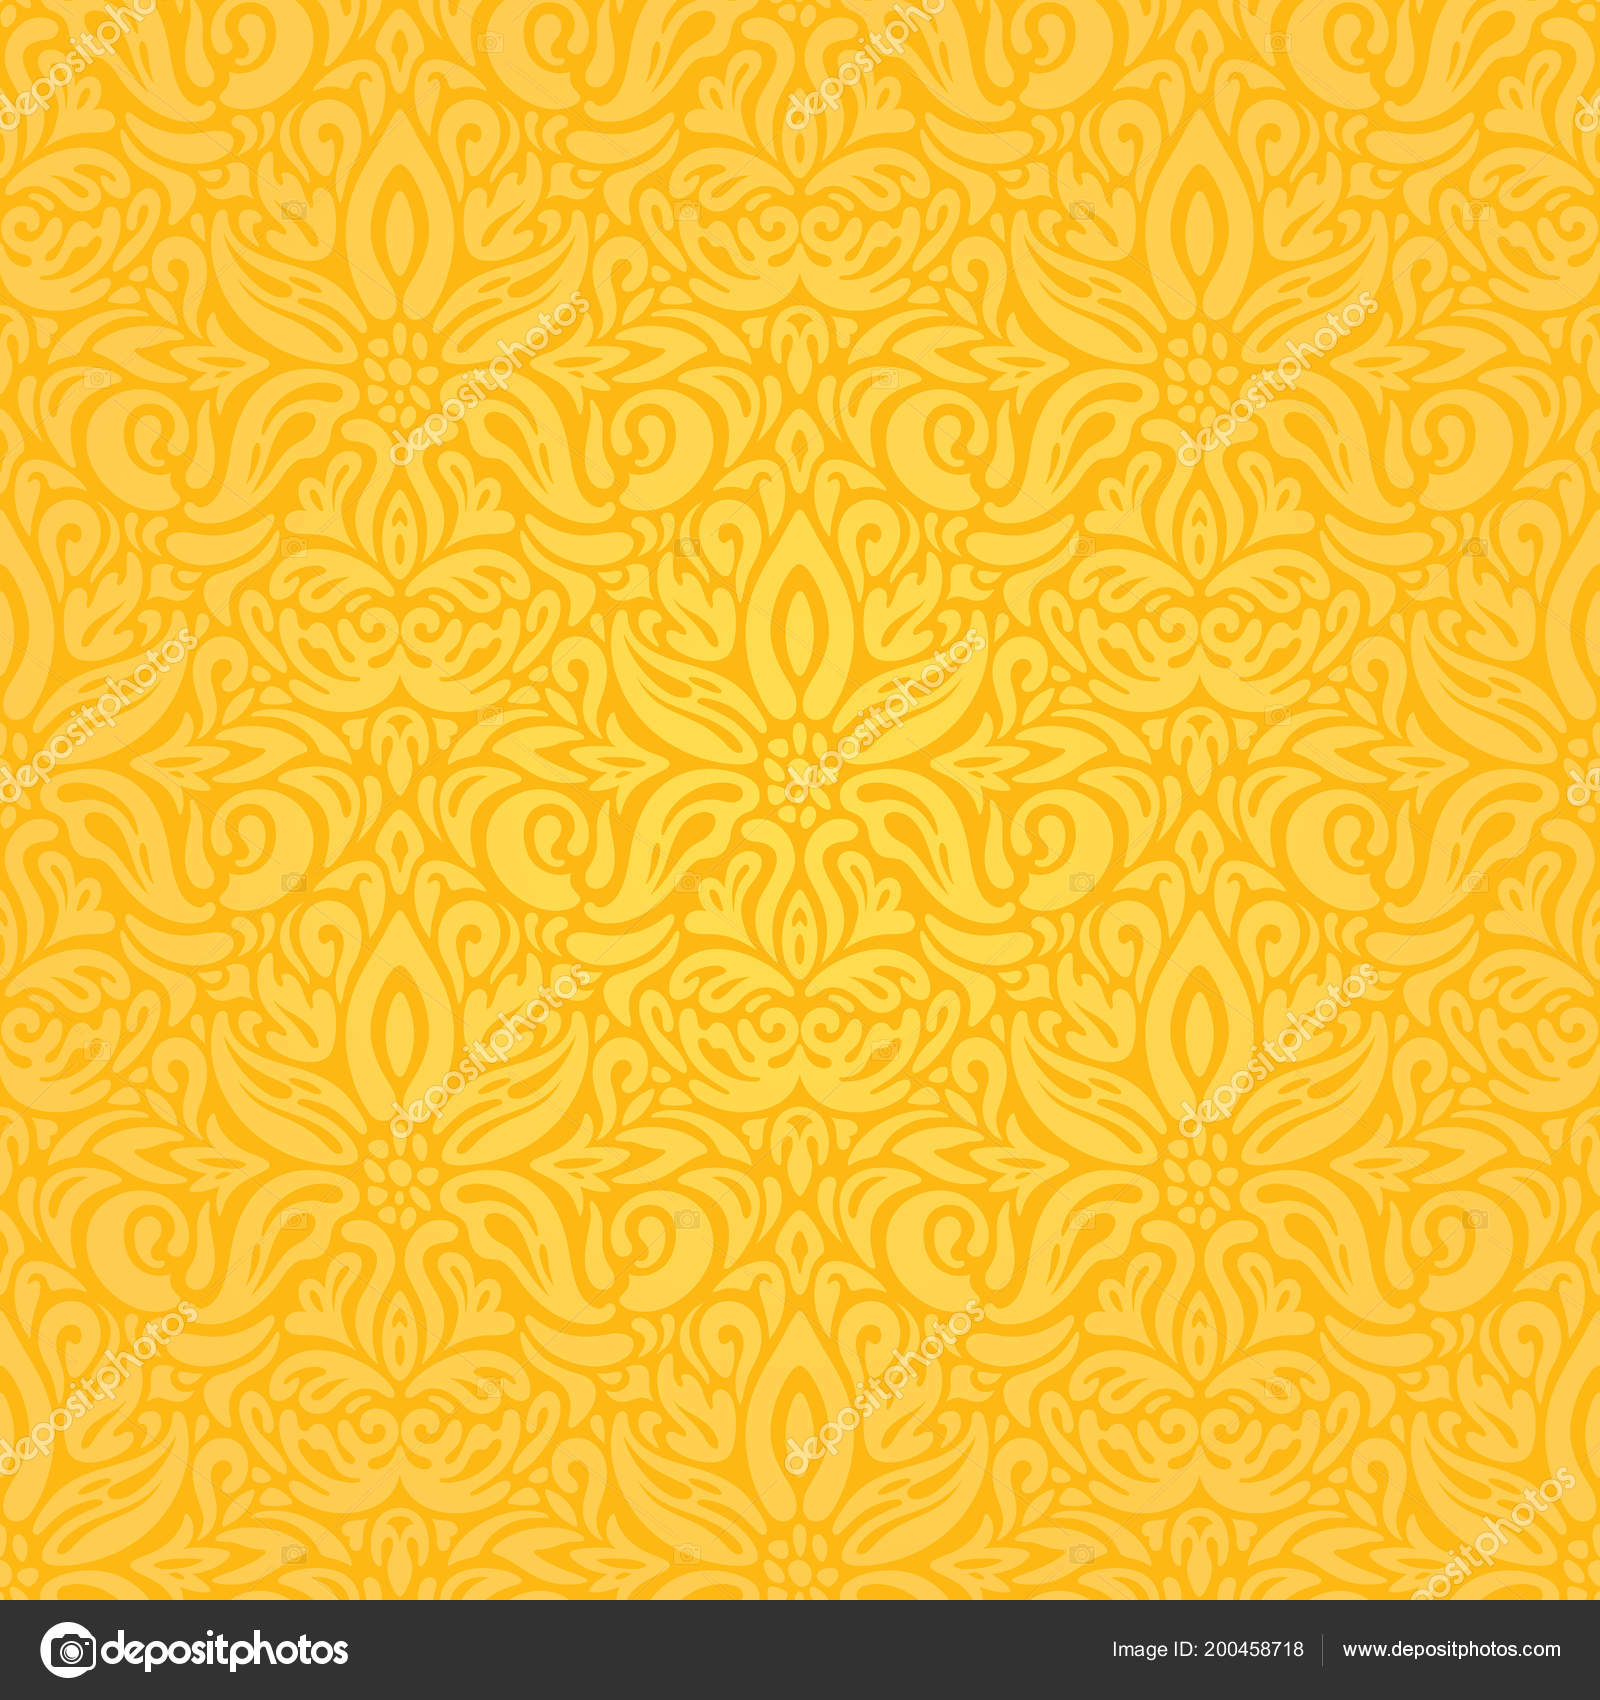 Hình nền hoa màu vàng đa sắc nét là lựa chọn lý tưởng cho những ai muốn làm mới không gian máy tính hoặc thiết kế trang trí. Lấy cảm hứng từ màu vàng tươi sáng, hình ảnh đầy sức sống này chắc chắn sẽ mang lại niềm vui và cảm giác thư giãn cho bạn. 